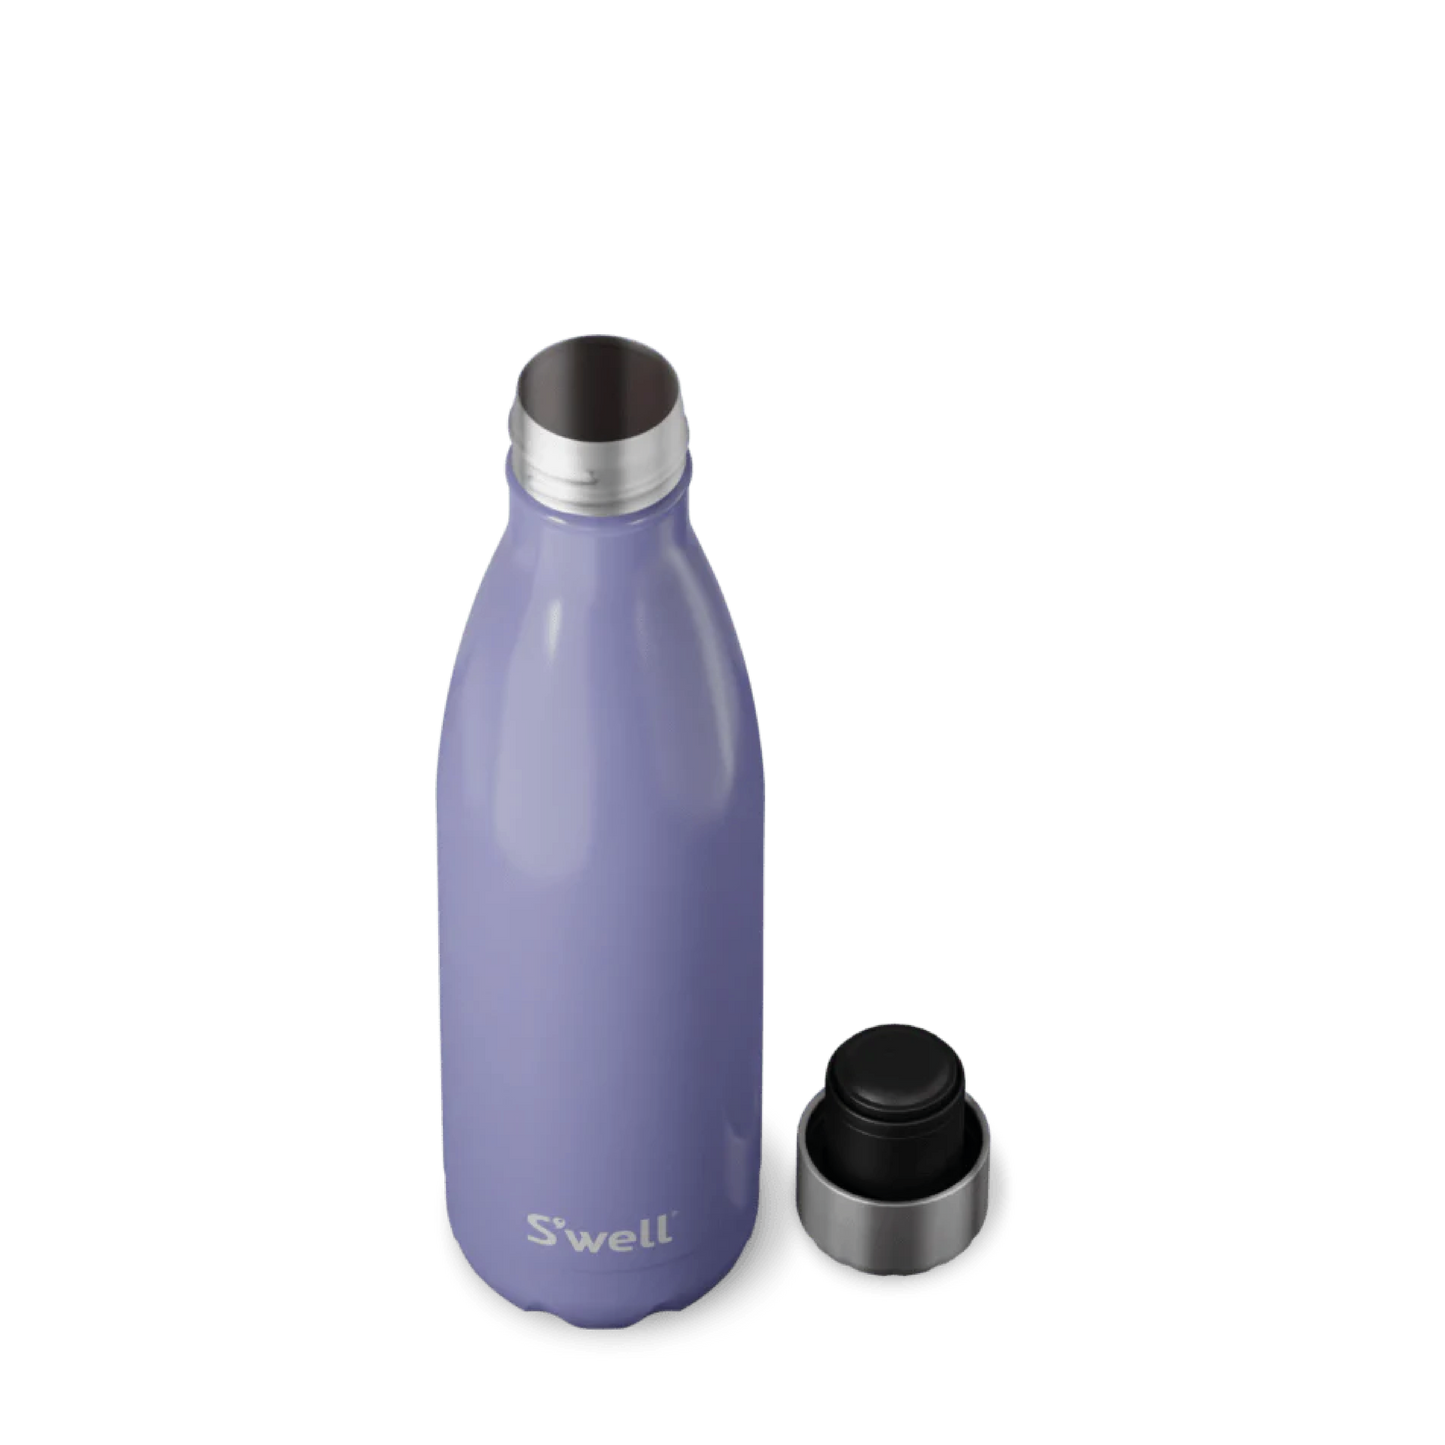 Hillside Lavender Bottle 17oz/500ml